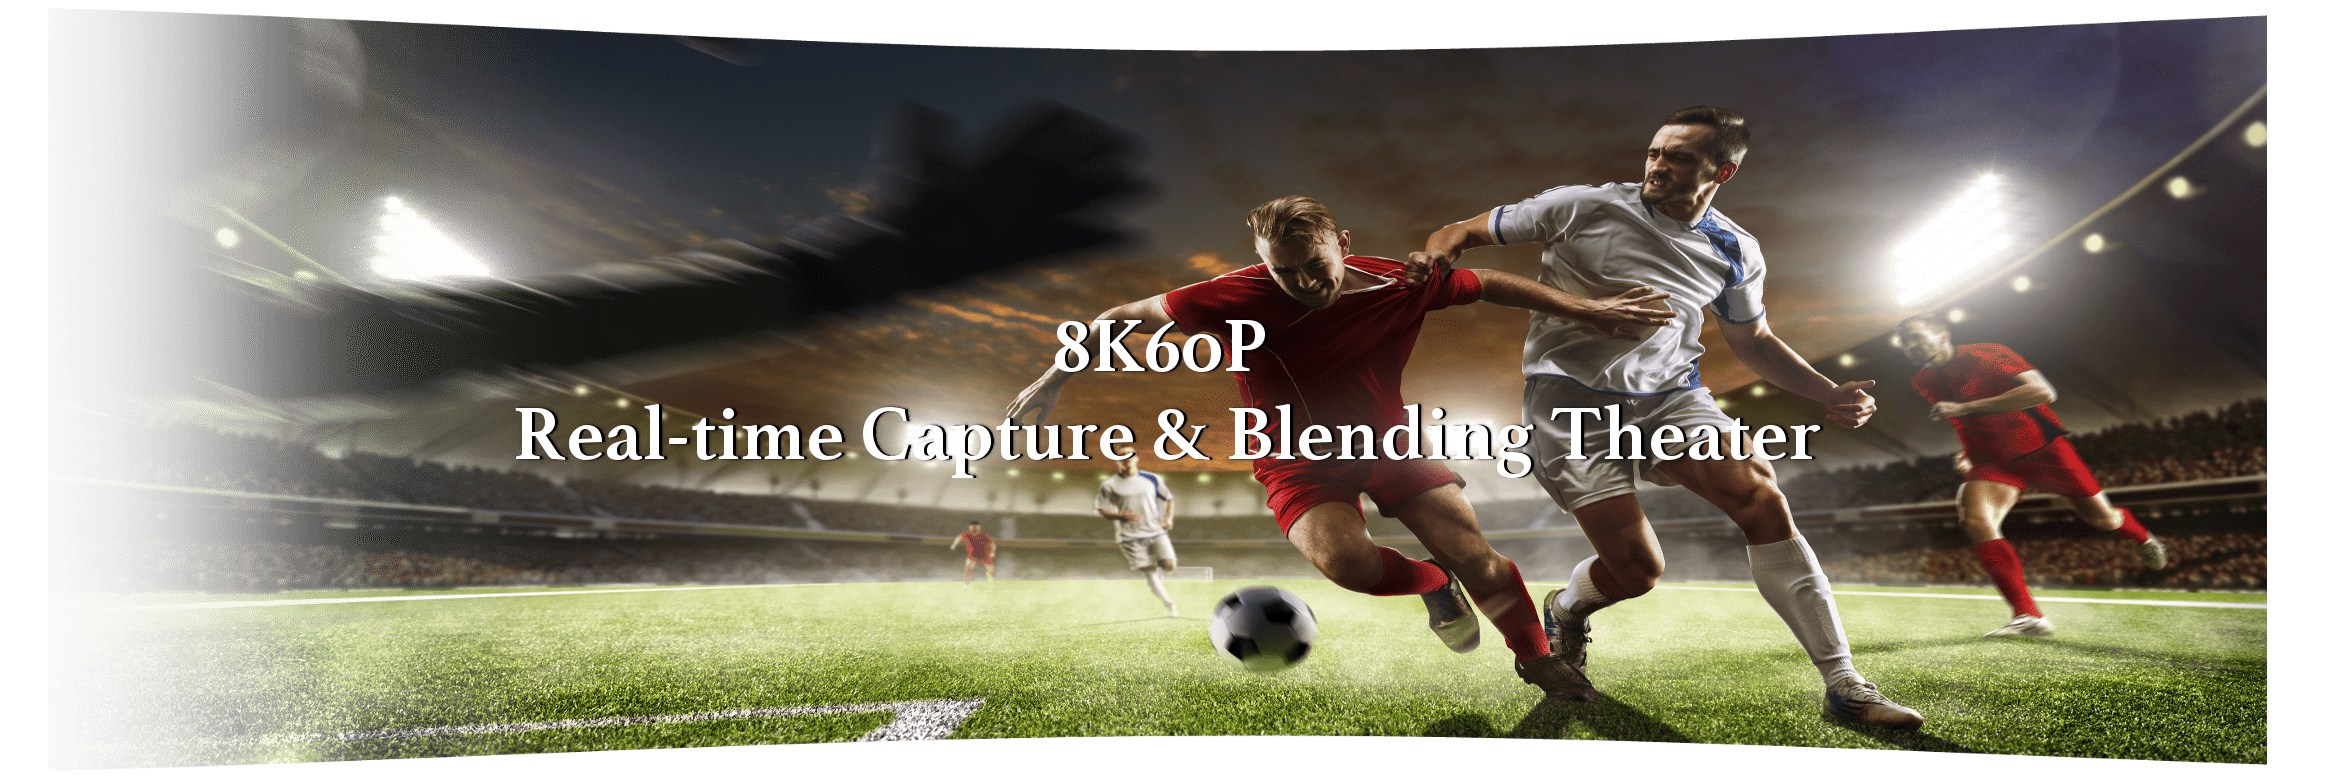 8K60P Real-time Capture & Blending FX